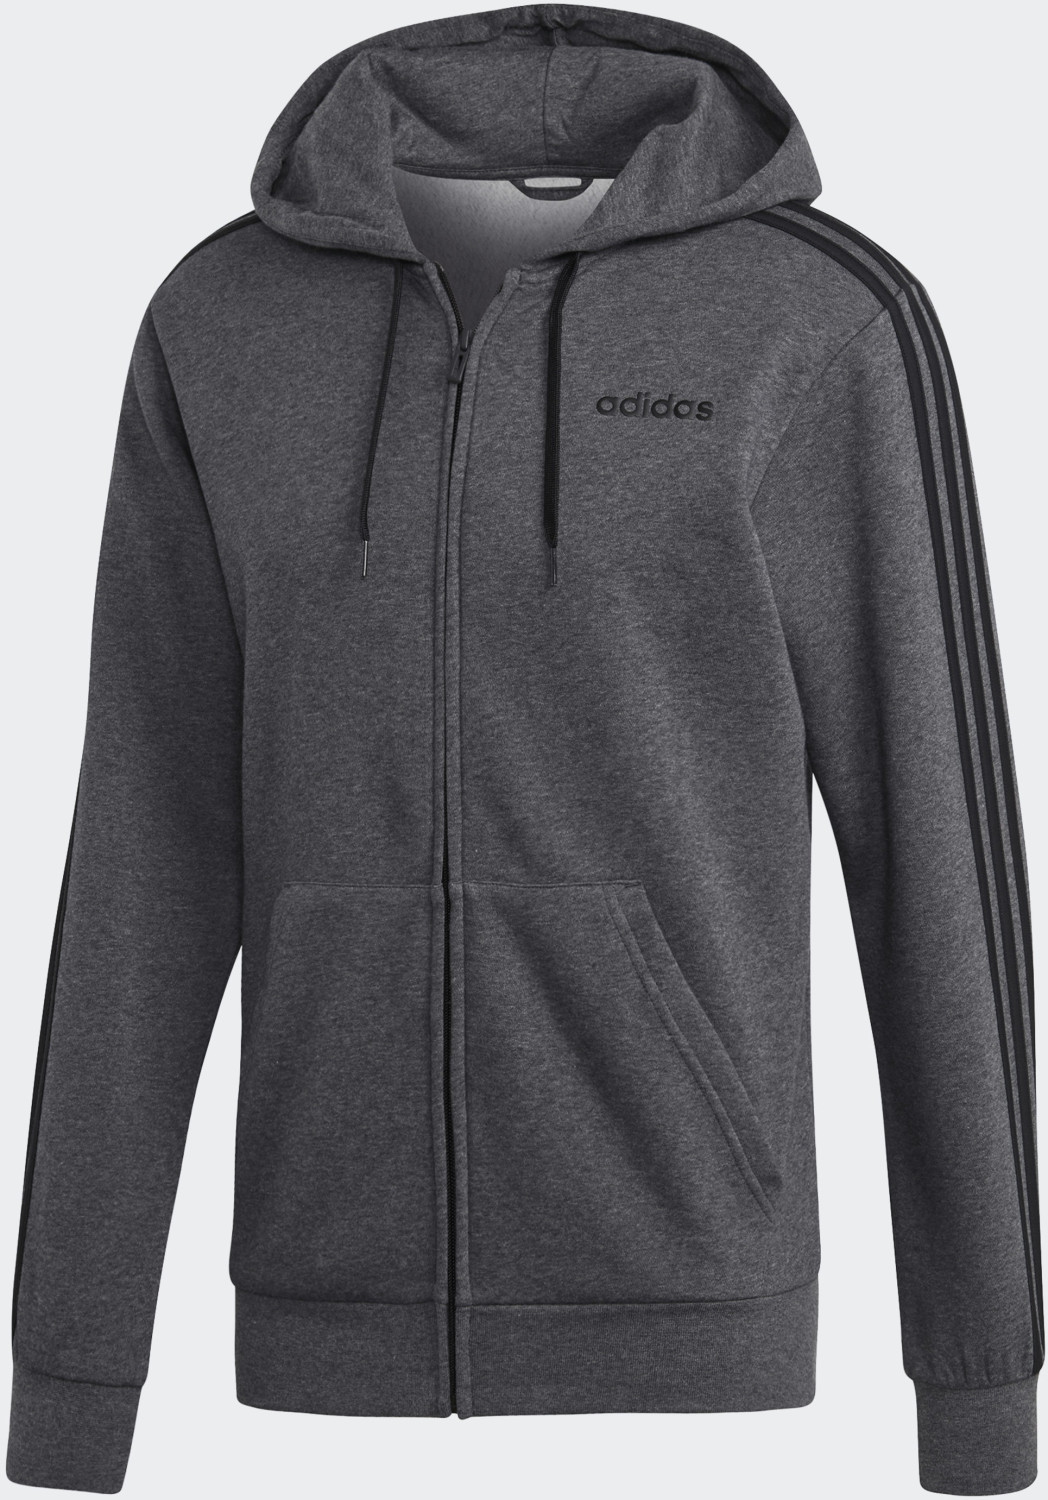 Adidas Essentials heather/black (DX2528) 3-Streifen bei | ab grey Preisvergleich 59,95 Fleece € Kapuzenjacke dark